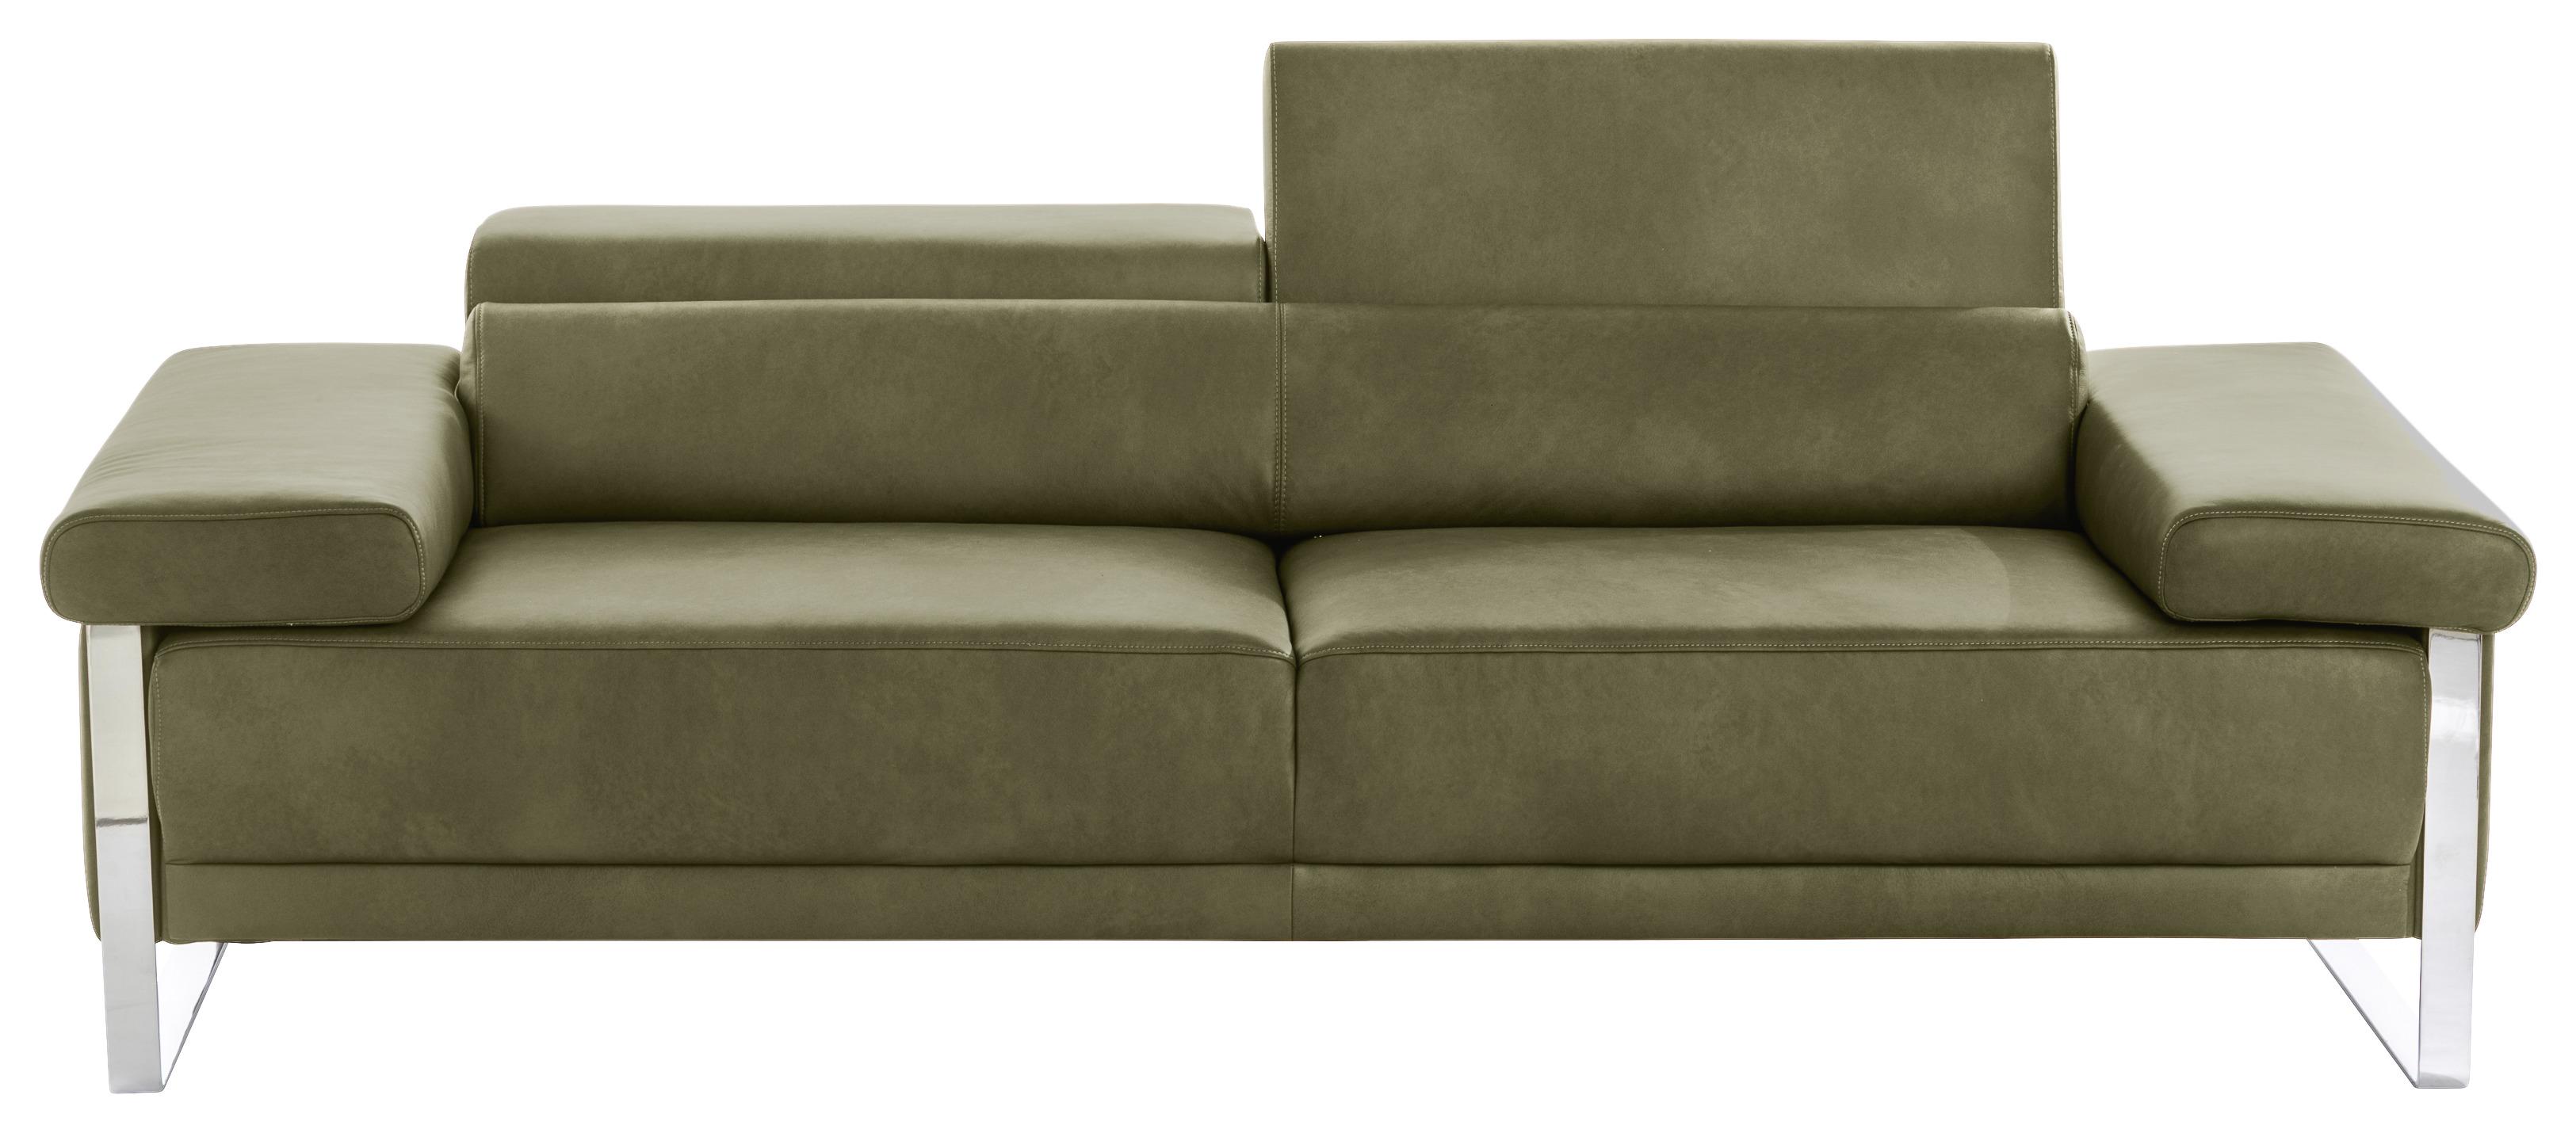 2-Sitzer-Sofa verstellbare Kopfstützen Grün Vintage-Look - Chromfarben/Grün, KONVENTIONELL, Leder (230/71/106cm) - W.Schillig